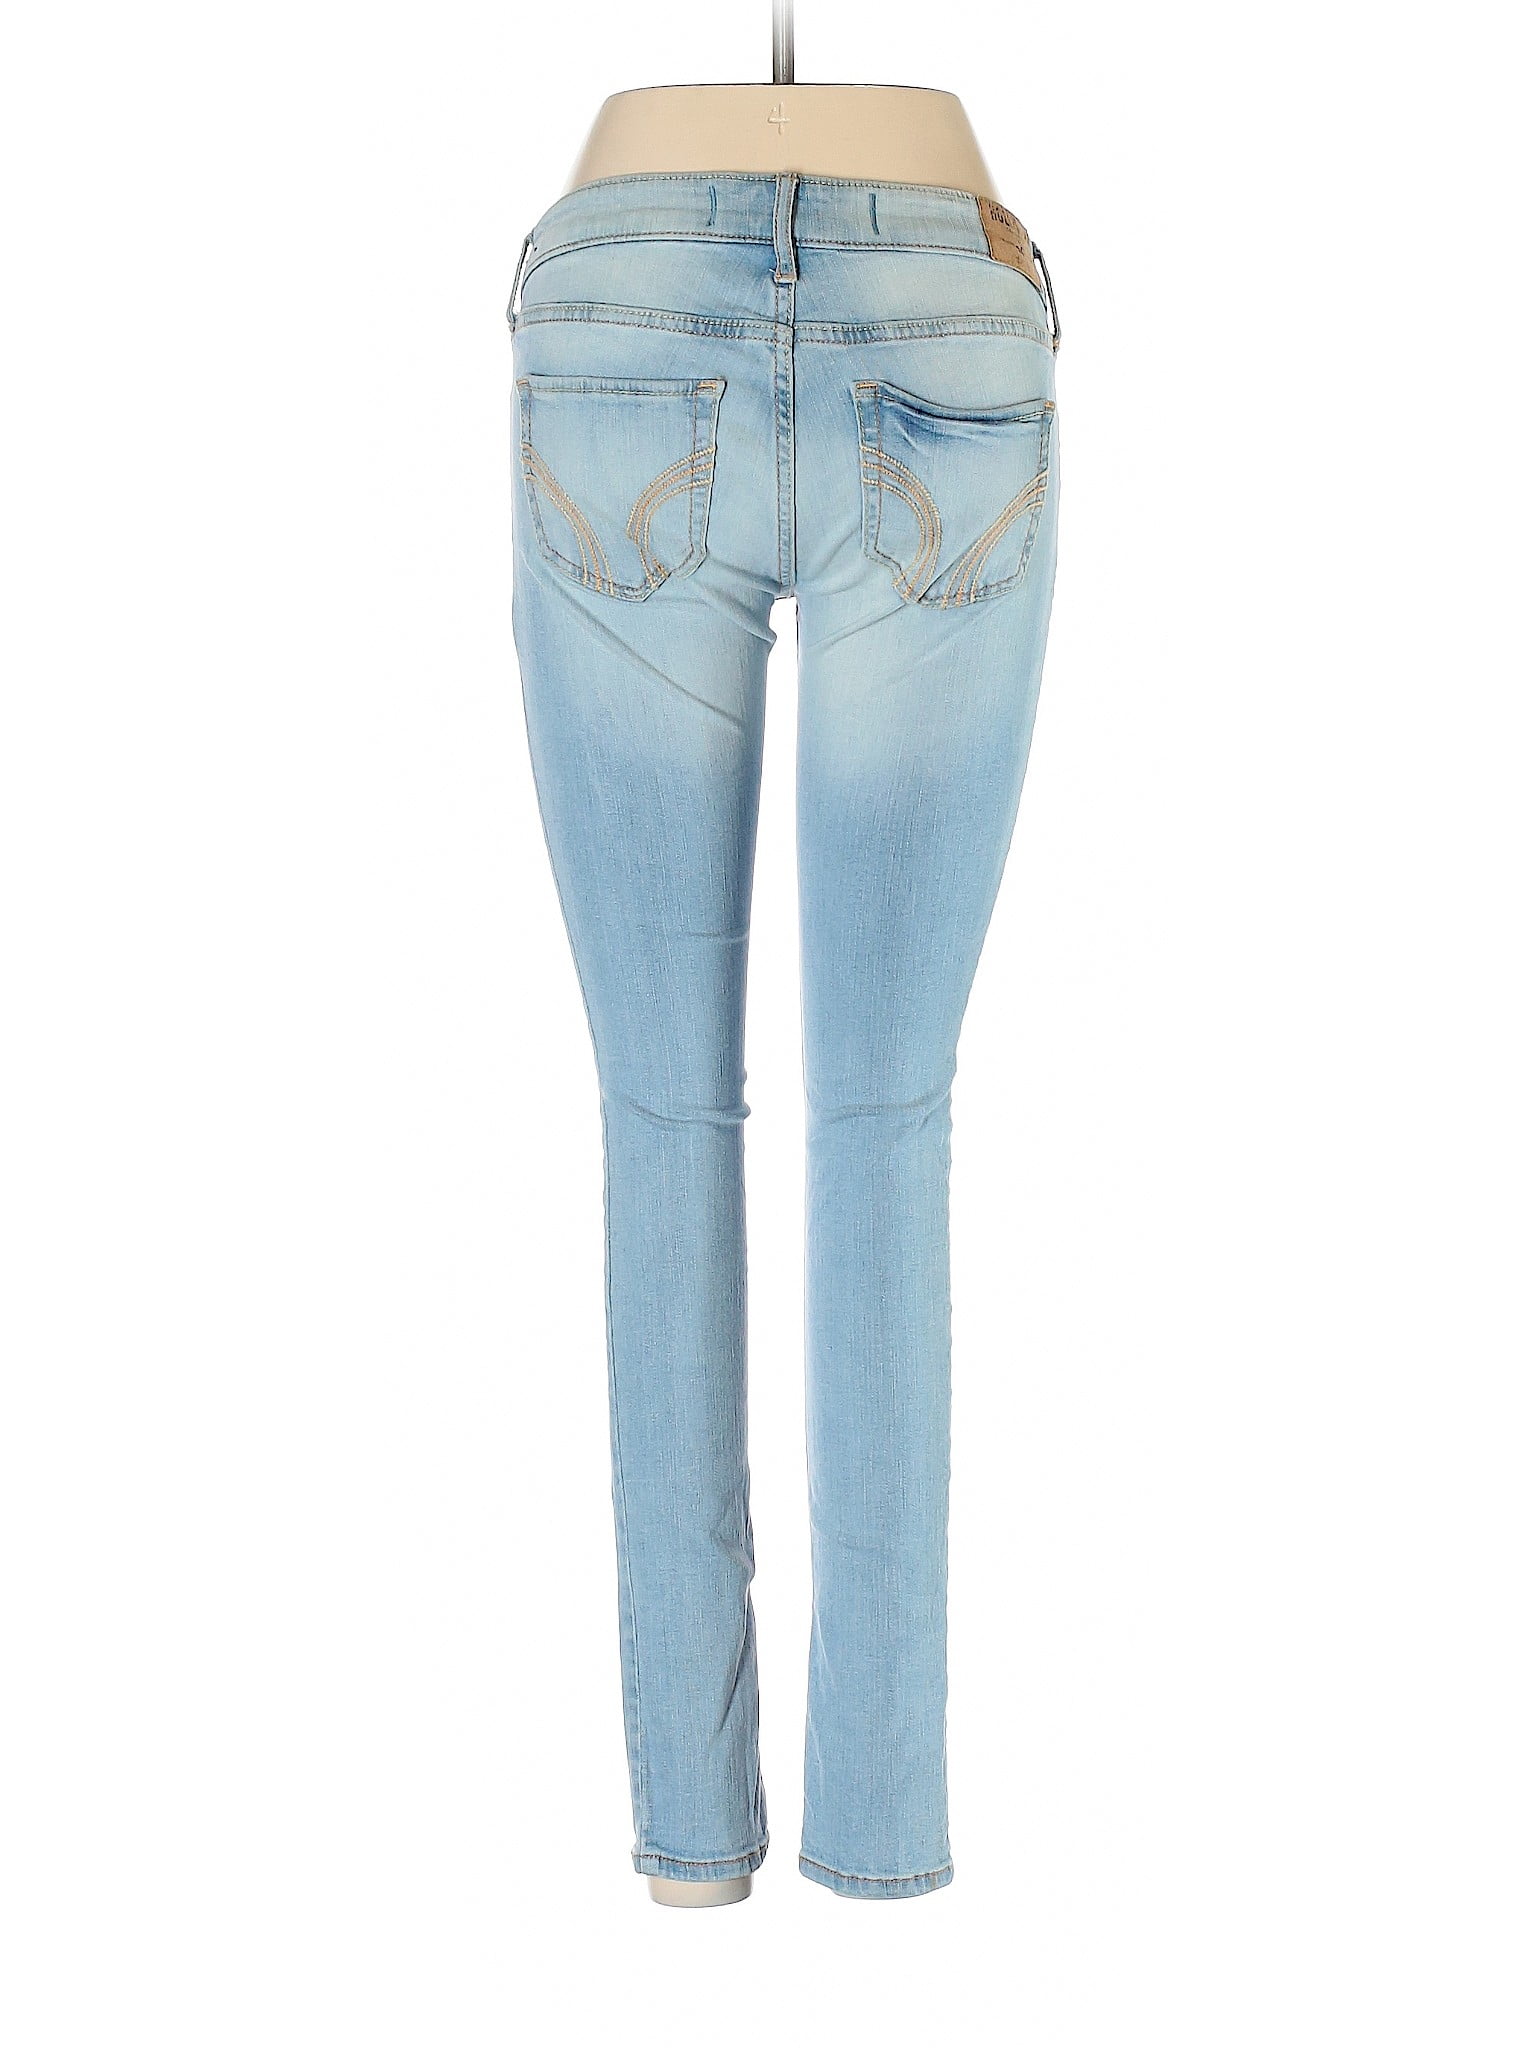 size 3 hollister jeans measurements